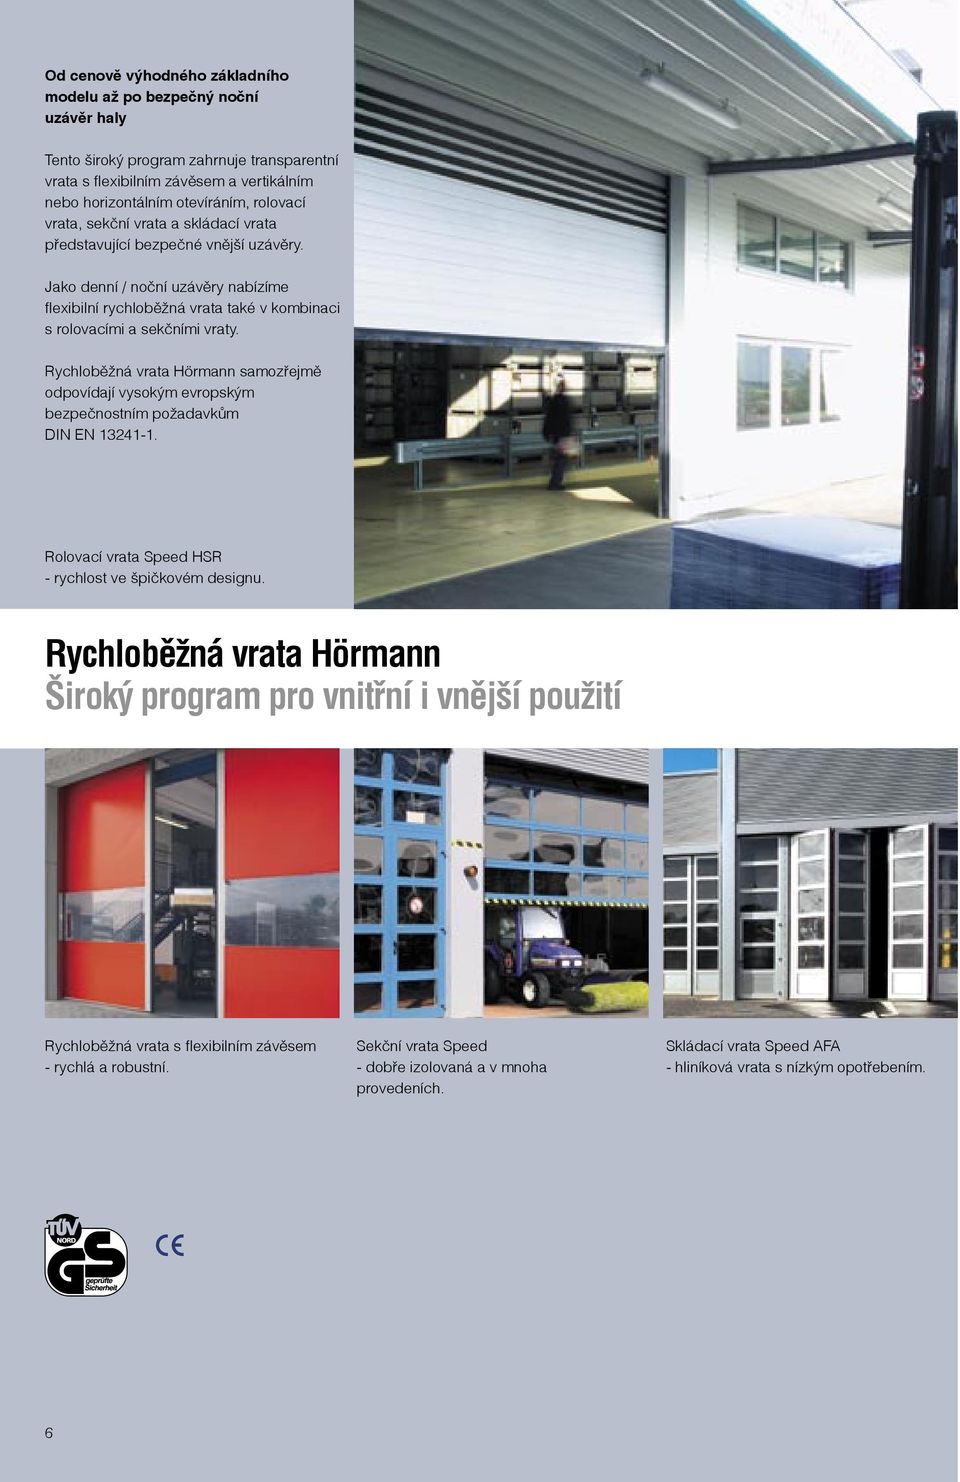 Rychloběžná vrata Hörmann samozřejmě odpovídají vysokým evropským bezpečnostním požadavkům DIN EN 13241-1. Rolovací vrata Speed HSR - rychlost ve špičkovém designu.